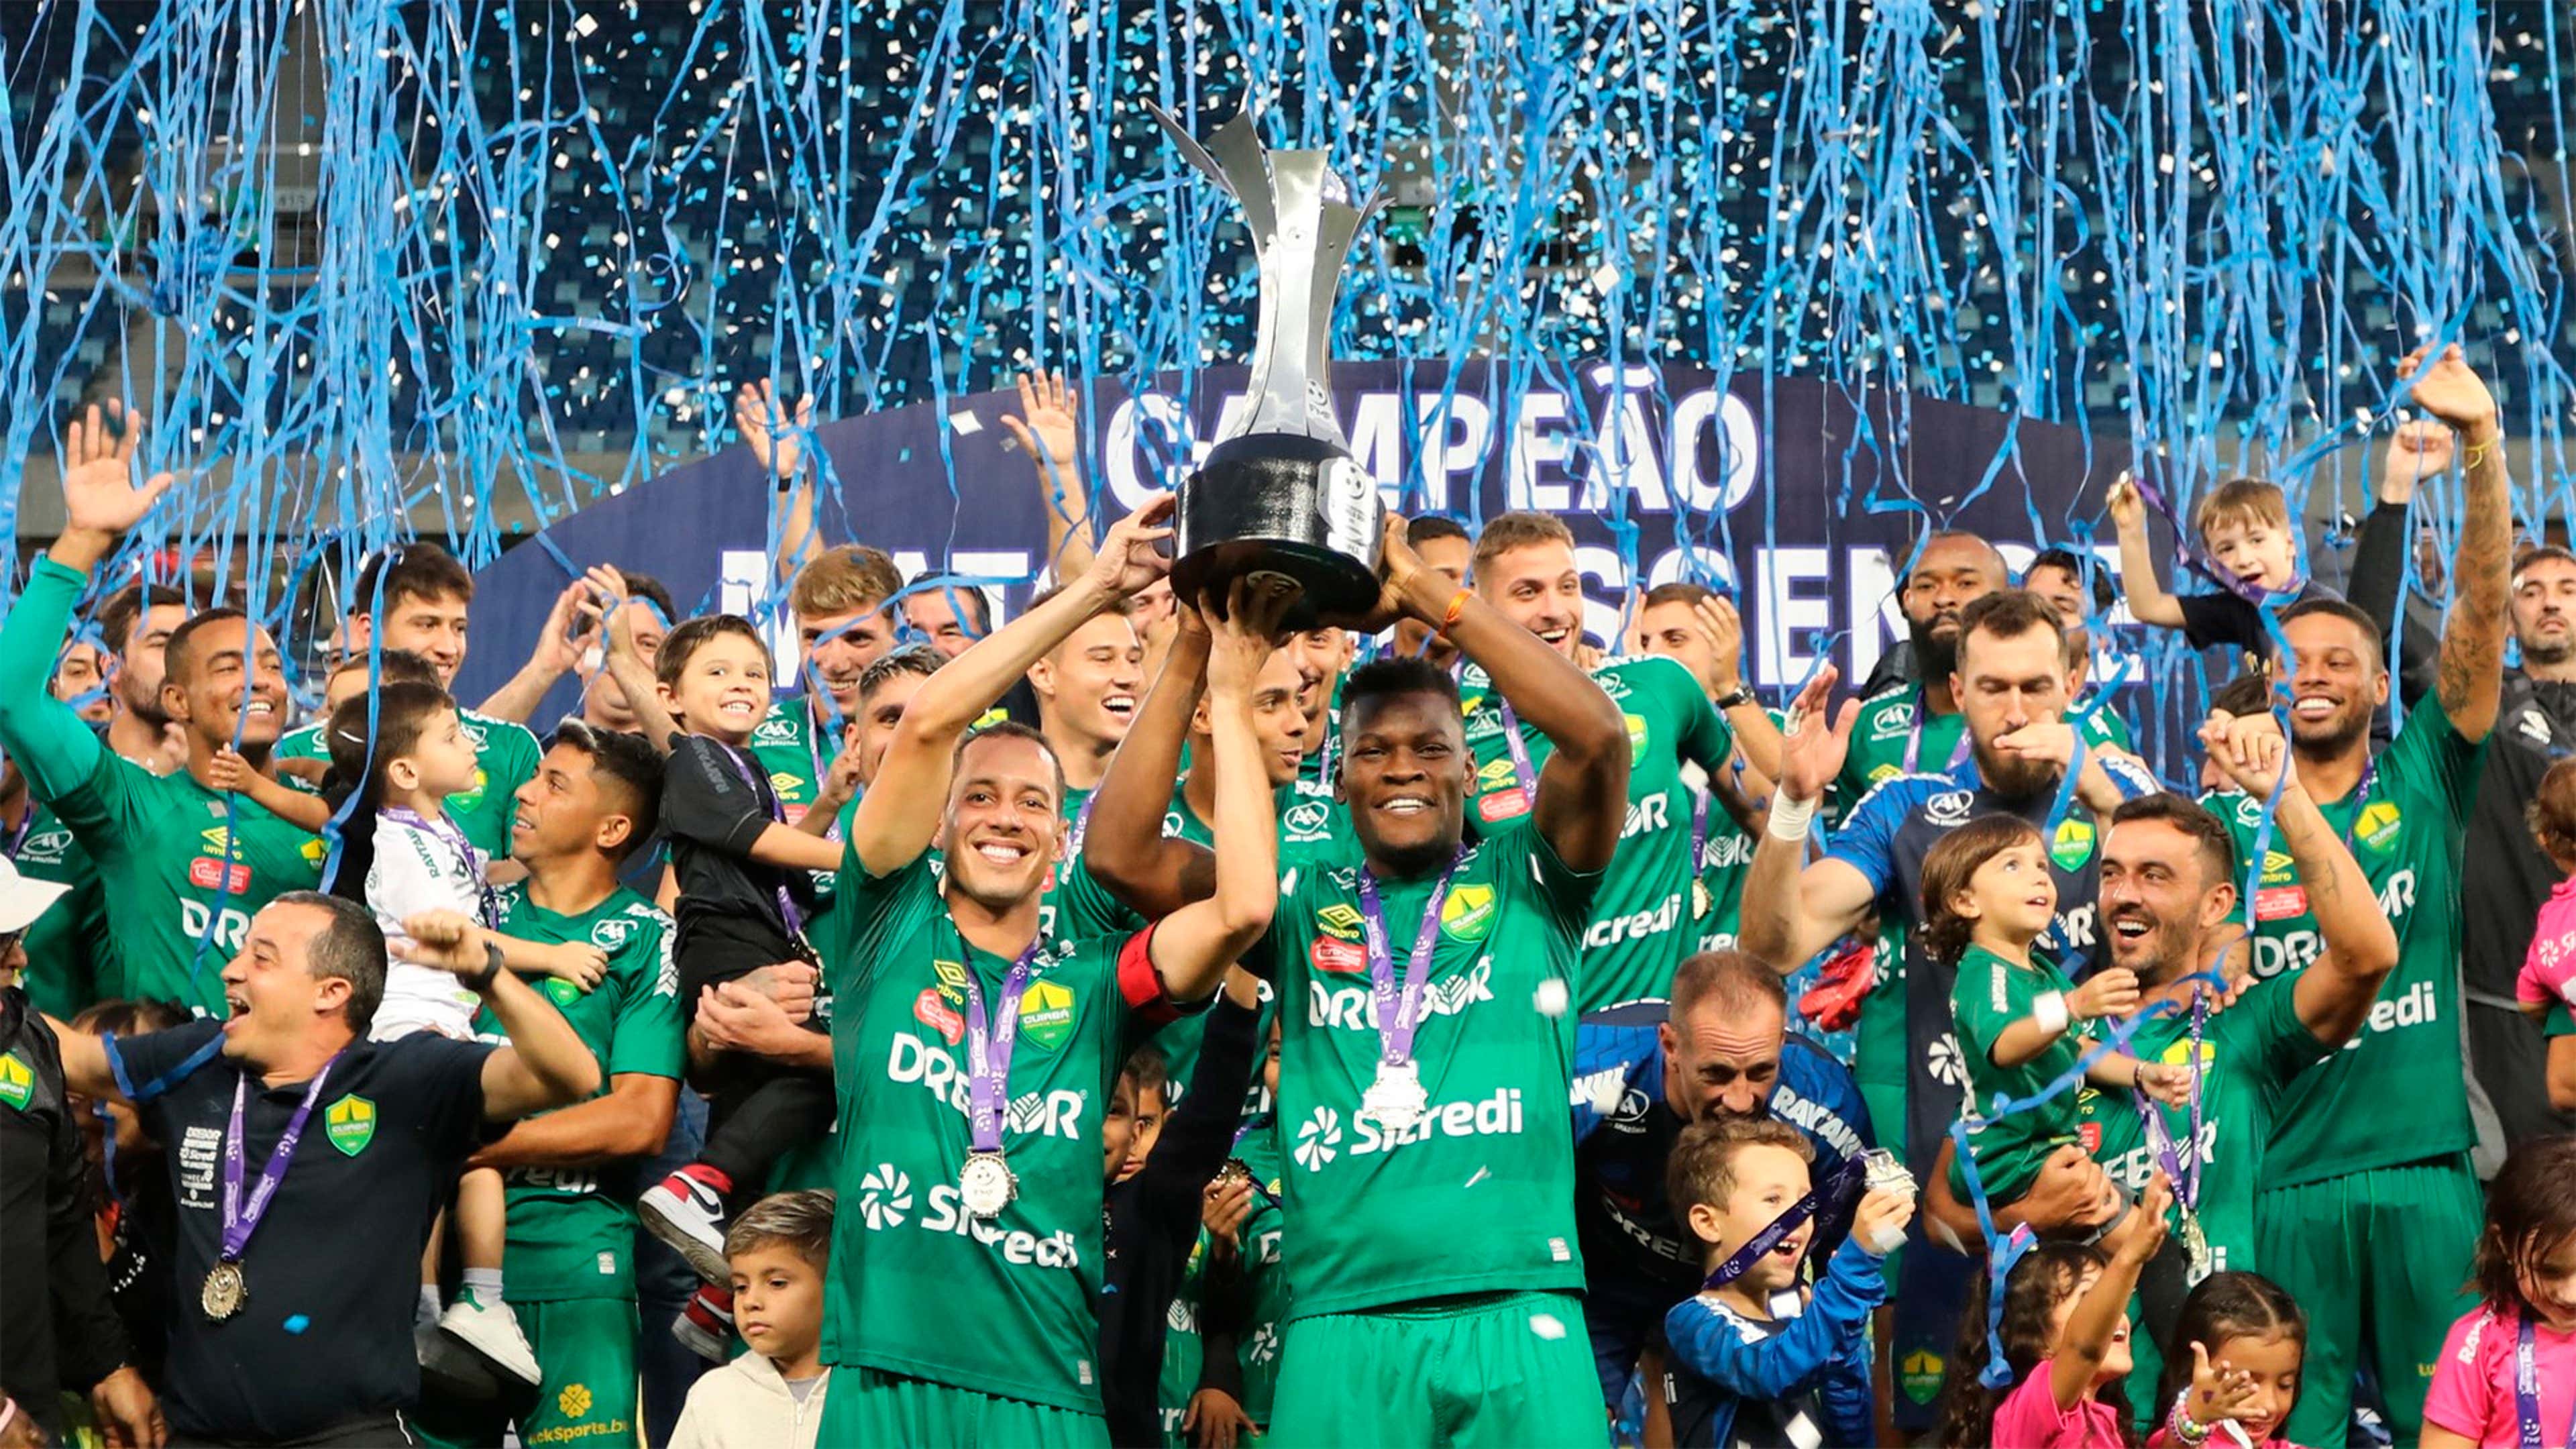 Os campeões estaduais do Brasil em 2022